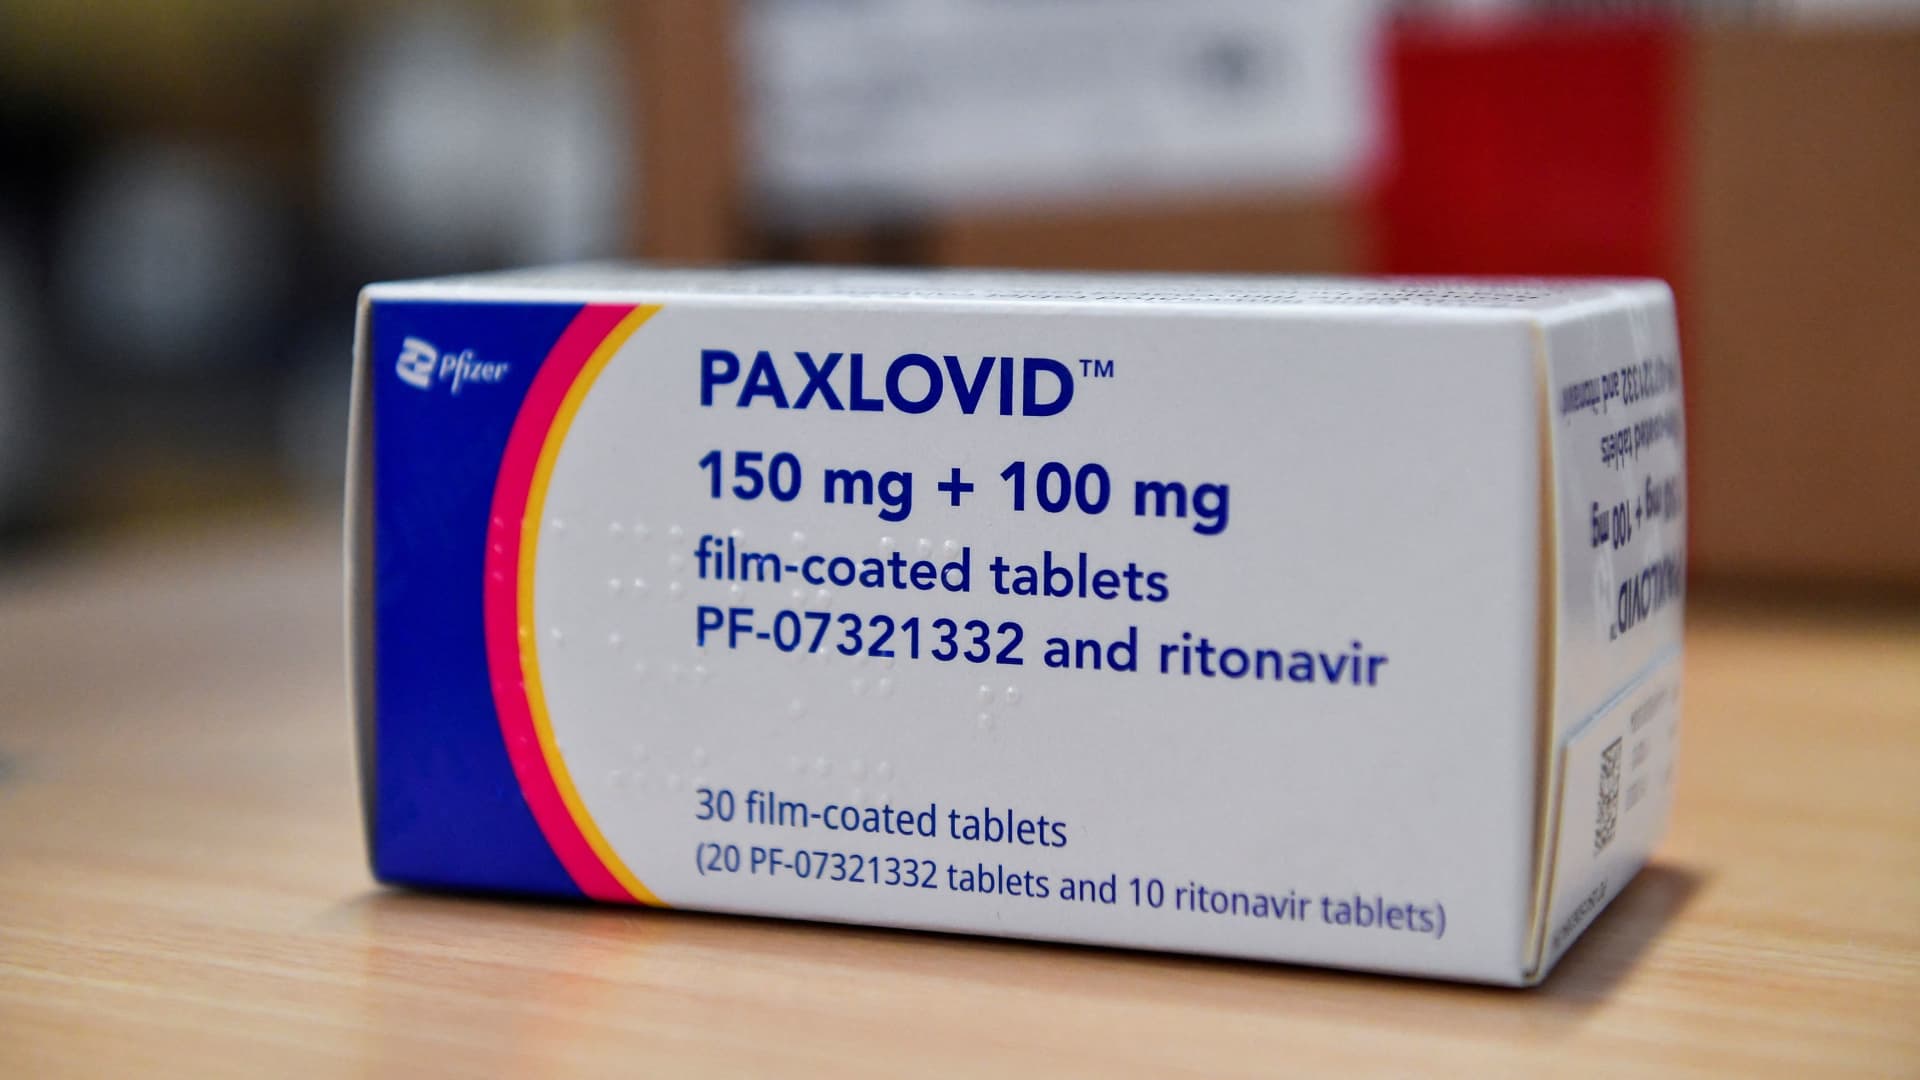 Coronavirus disease (COVID-19) treatment pill Paxlovid is seen in a box, at Misericordia hospital in Grosseto, Italy, February 8, 2022.